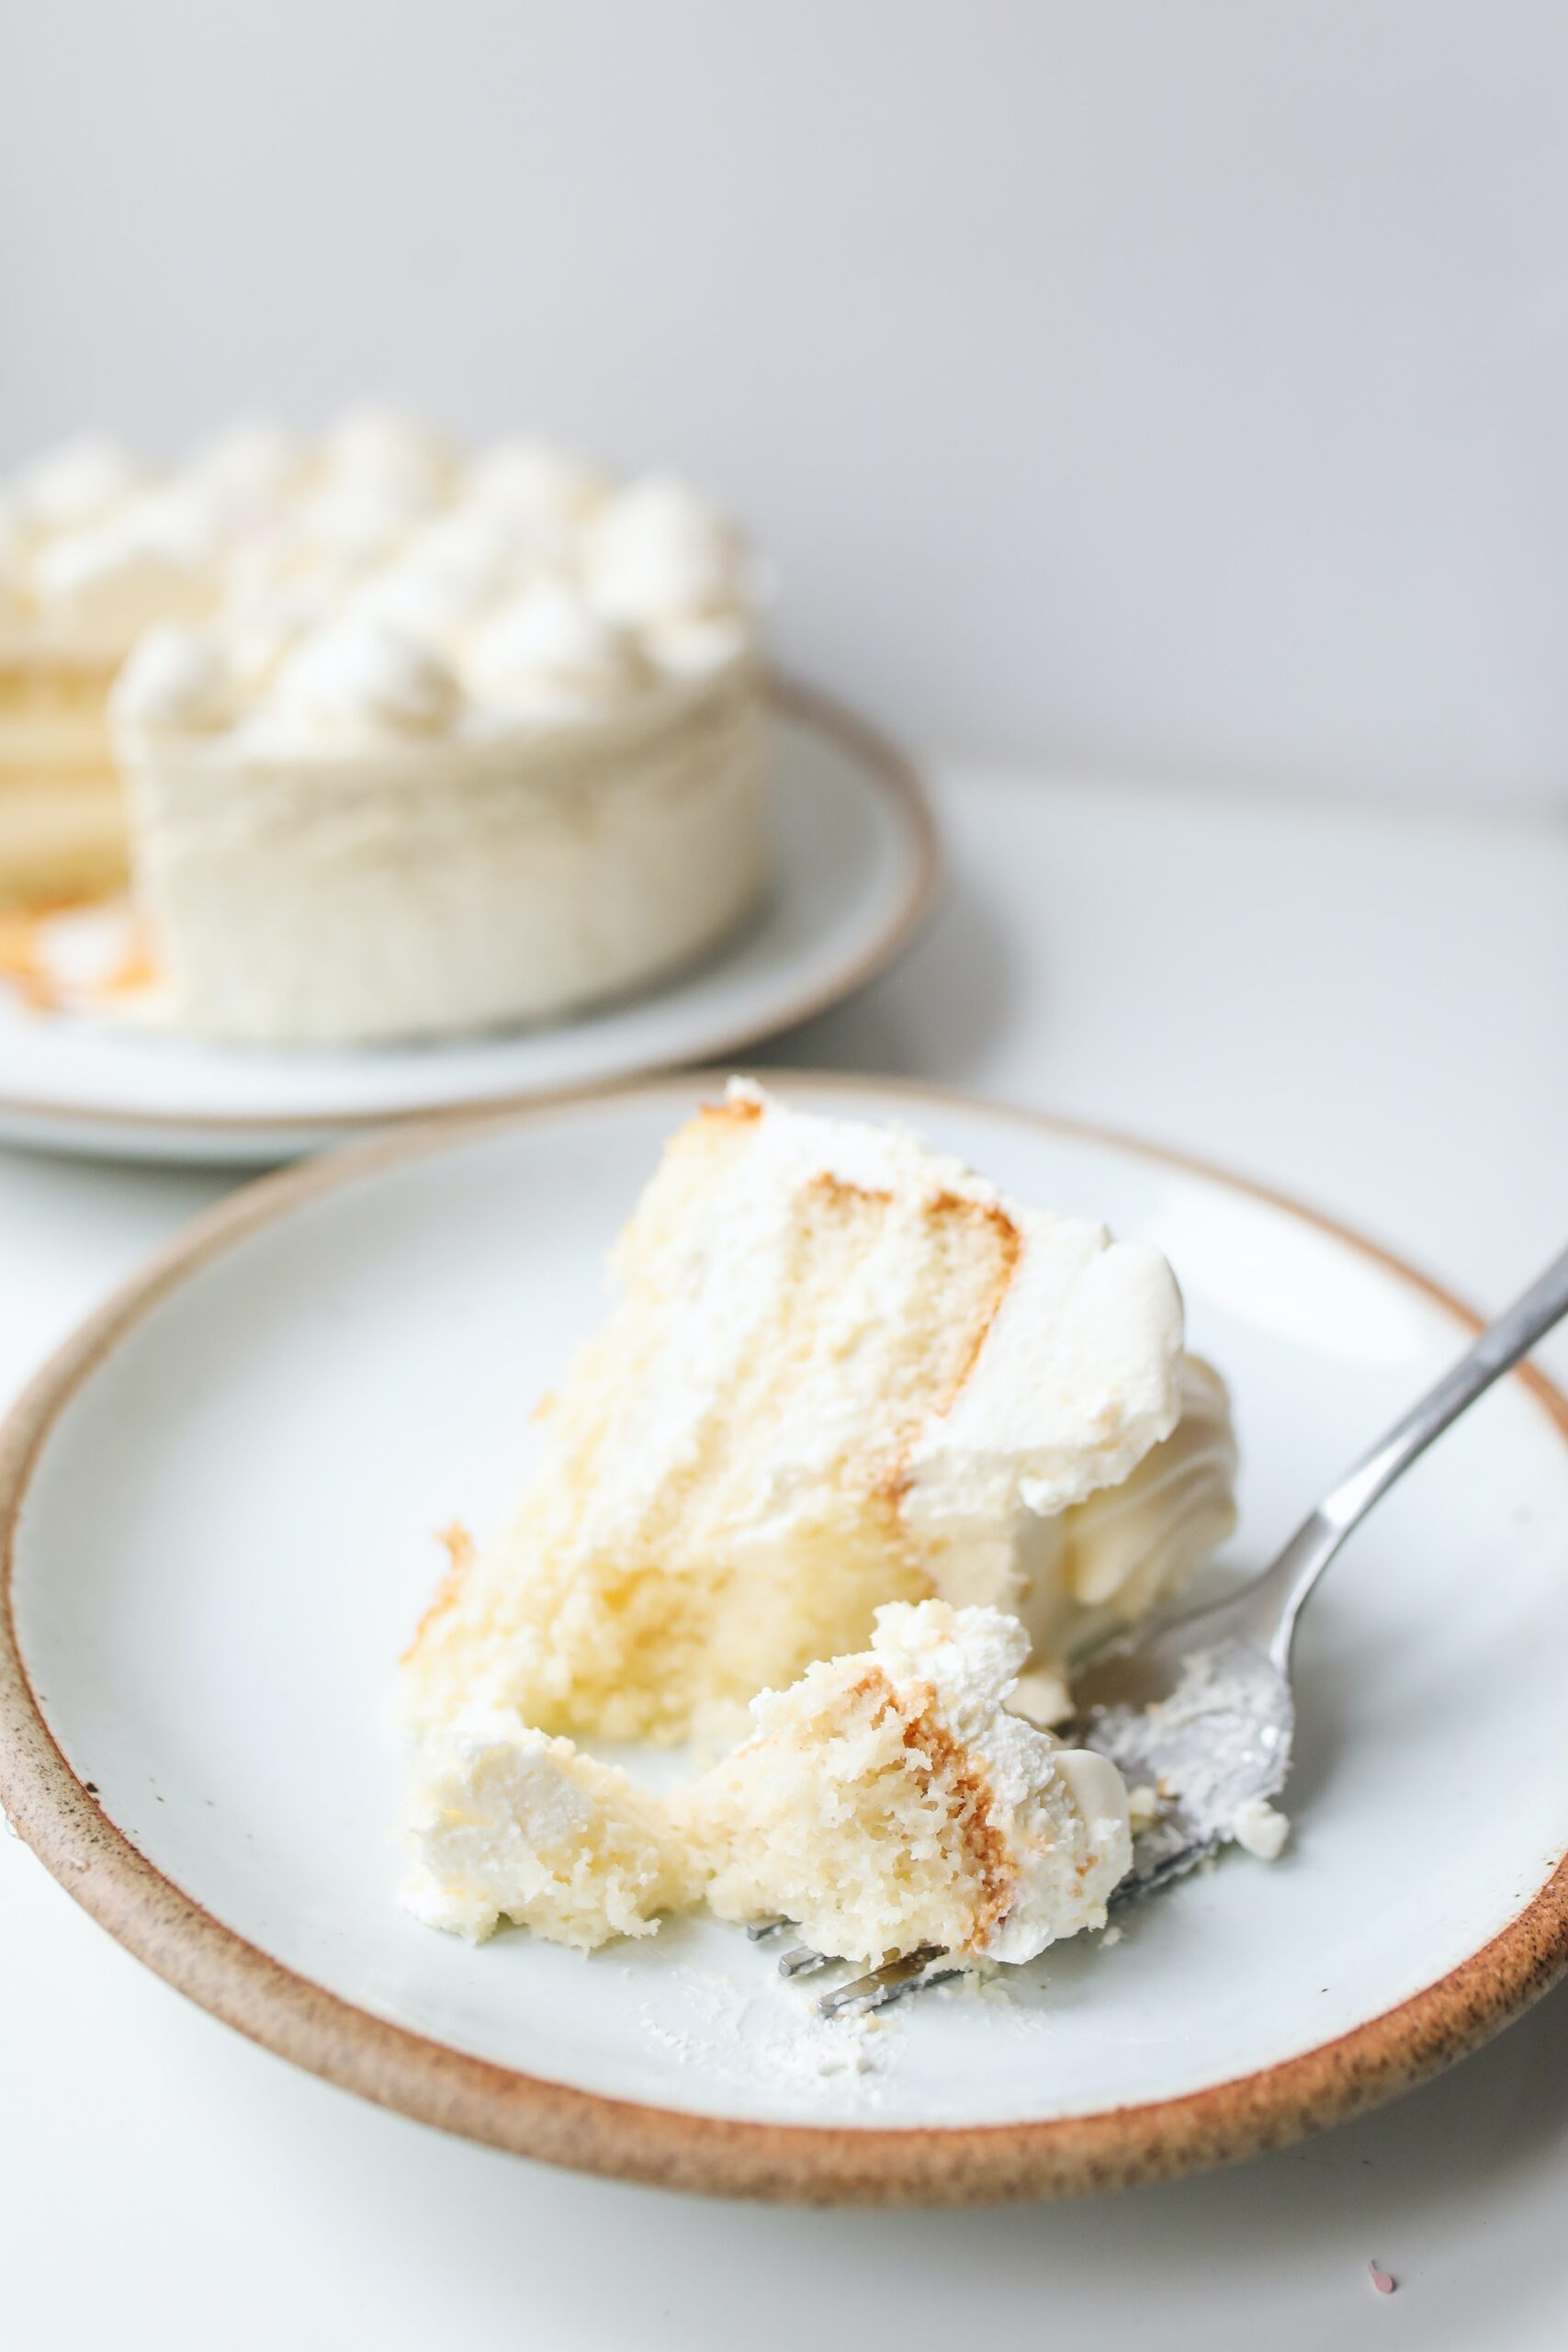 How To Make Vanilla Cake